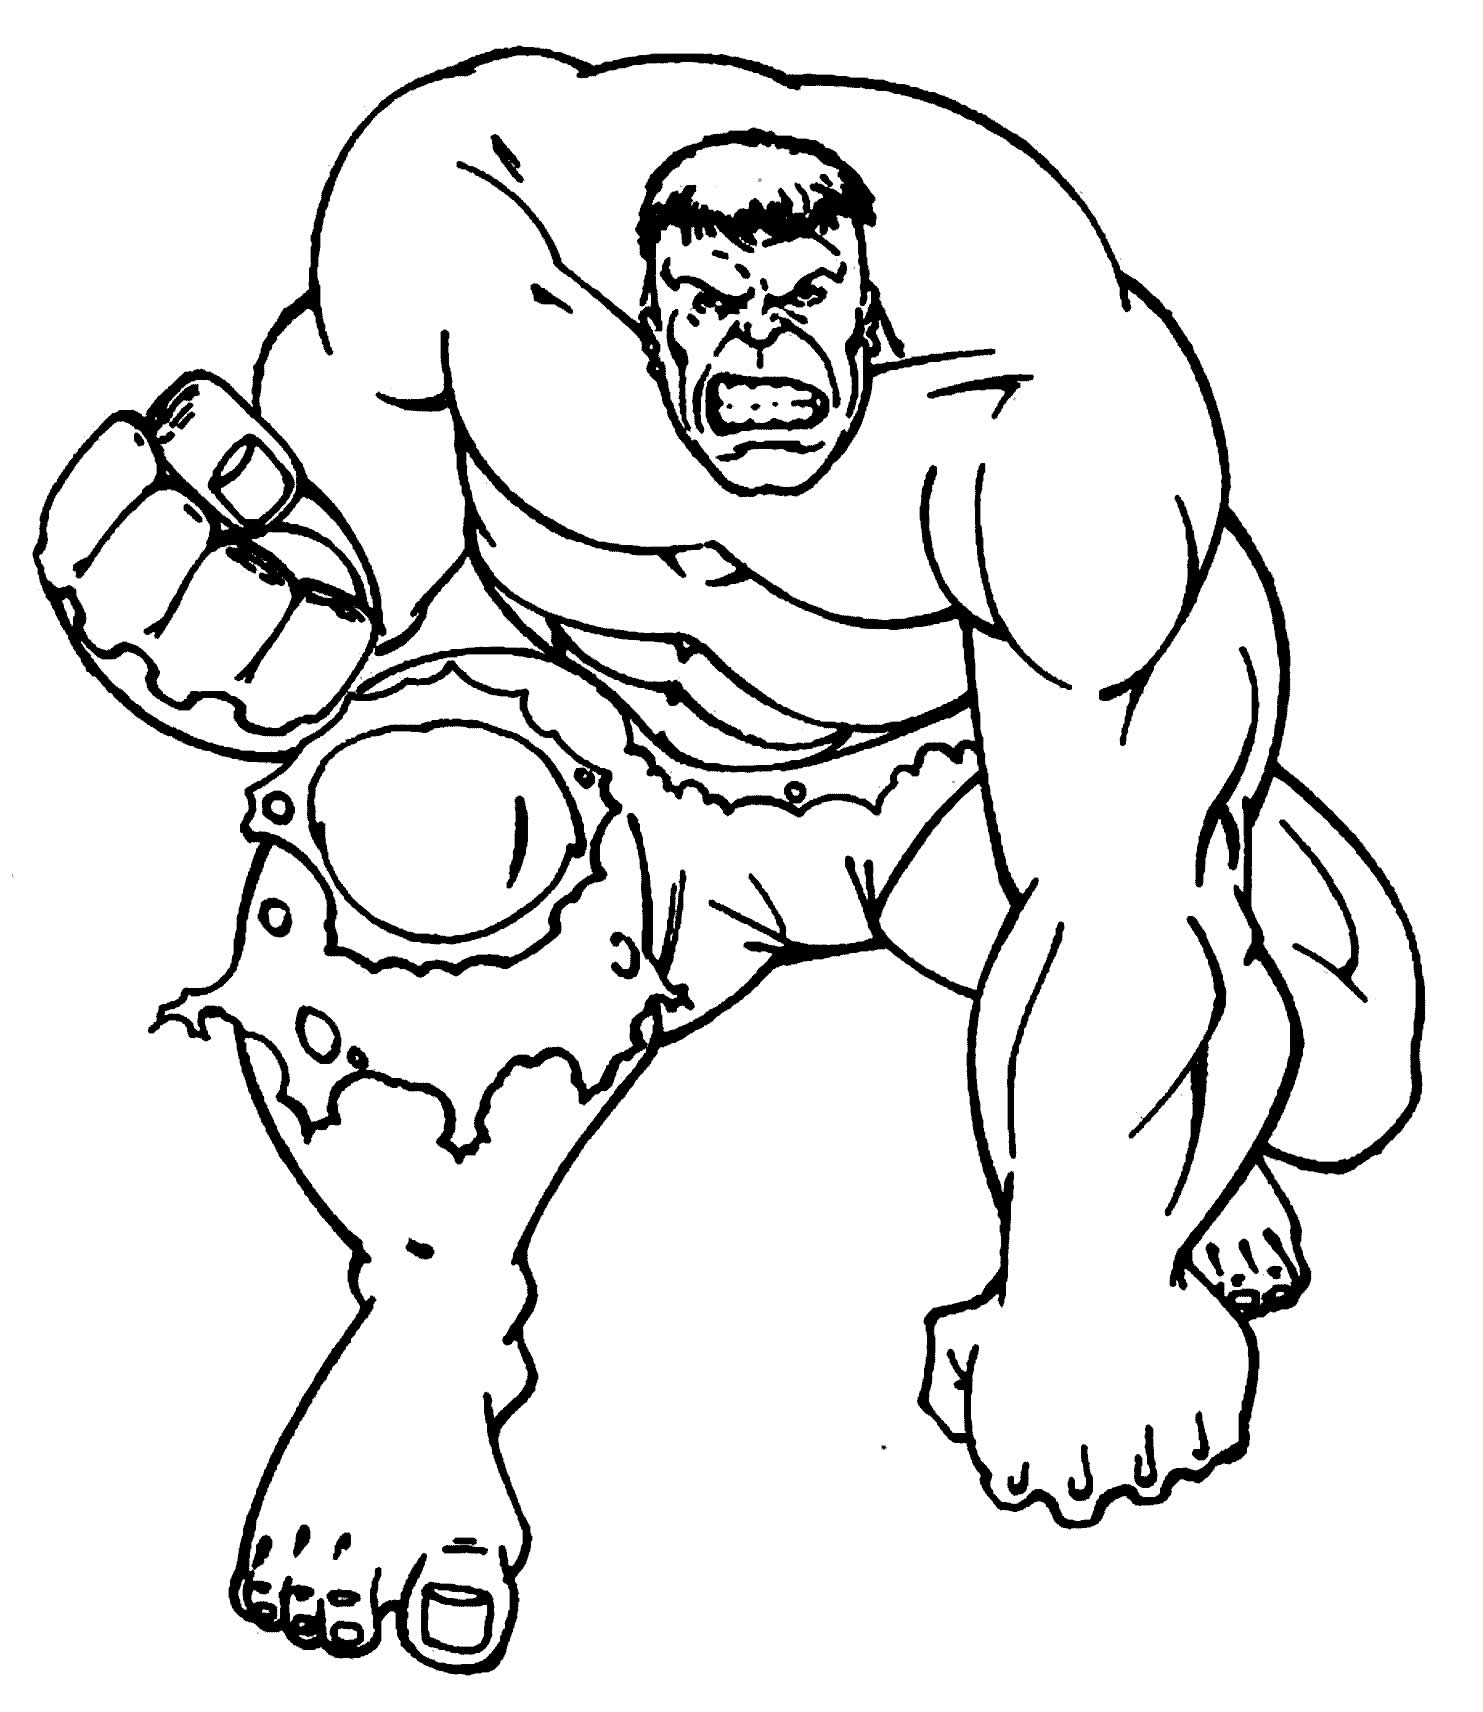 Desenho de Hulk para pintar